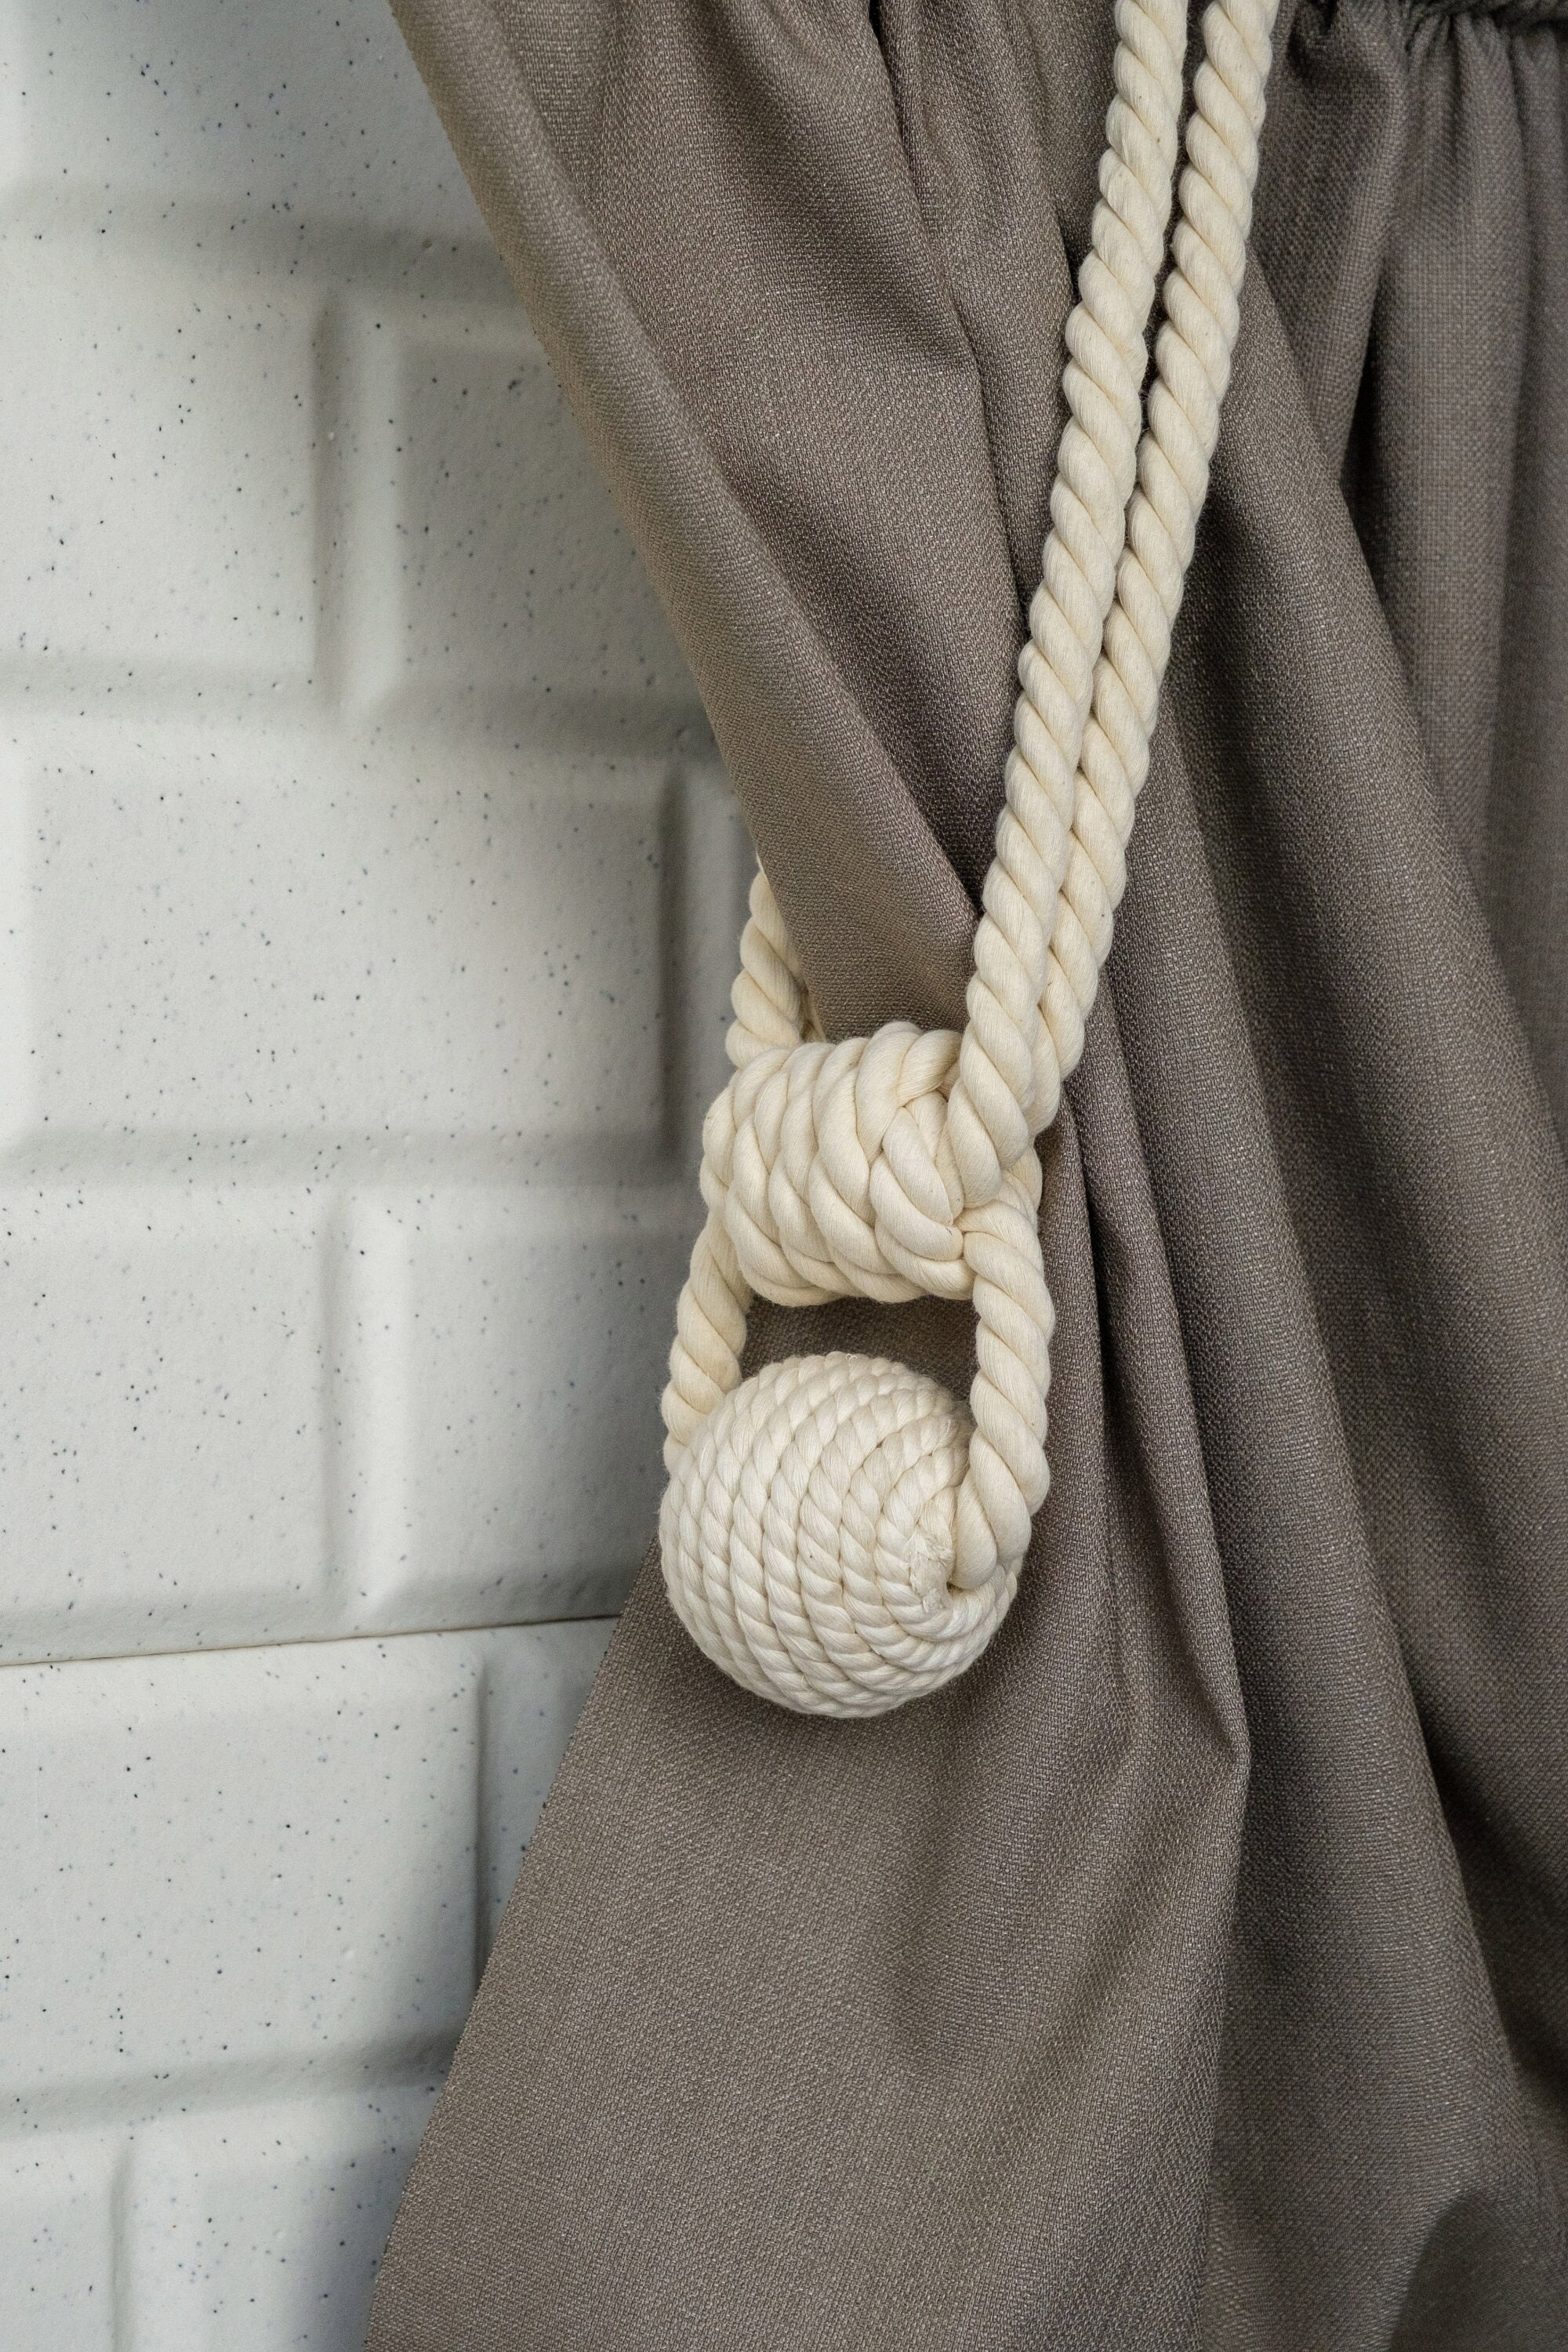 White Twisted Rope Tie Backs Modern Knightsbridge Tie Back Tie Rope Sold as Pair 